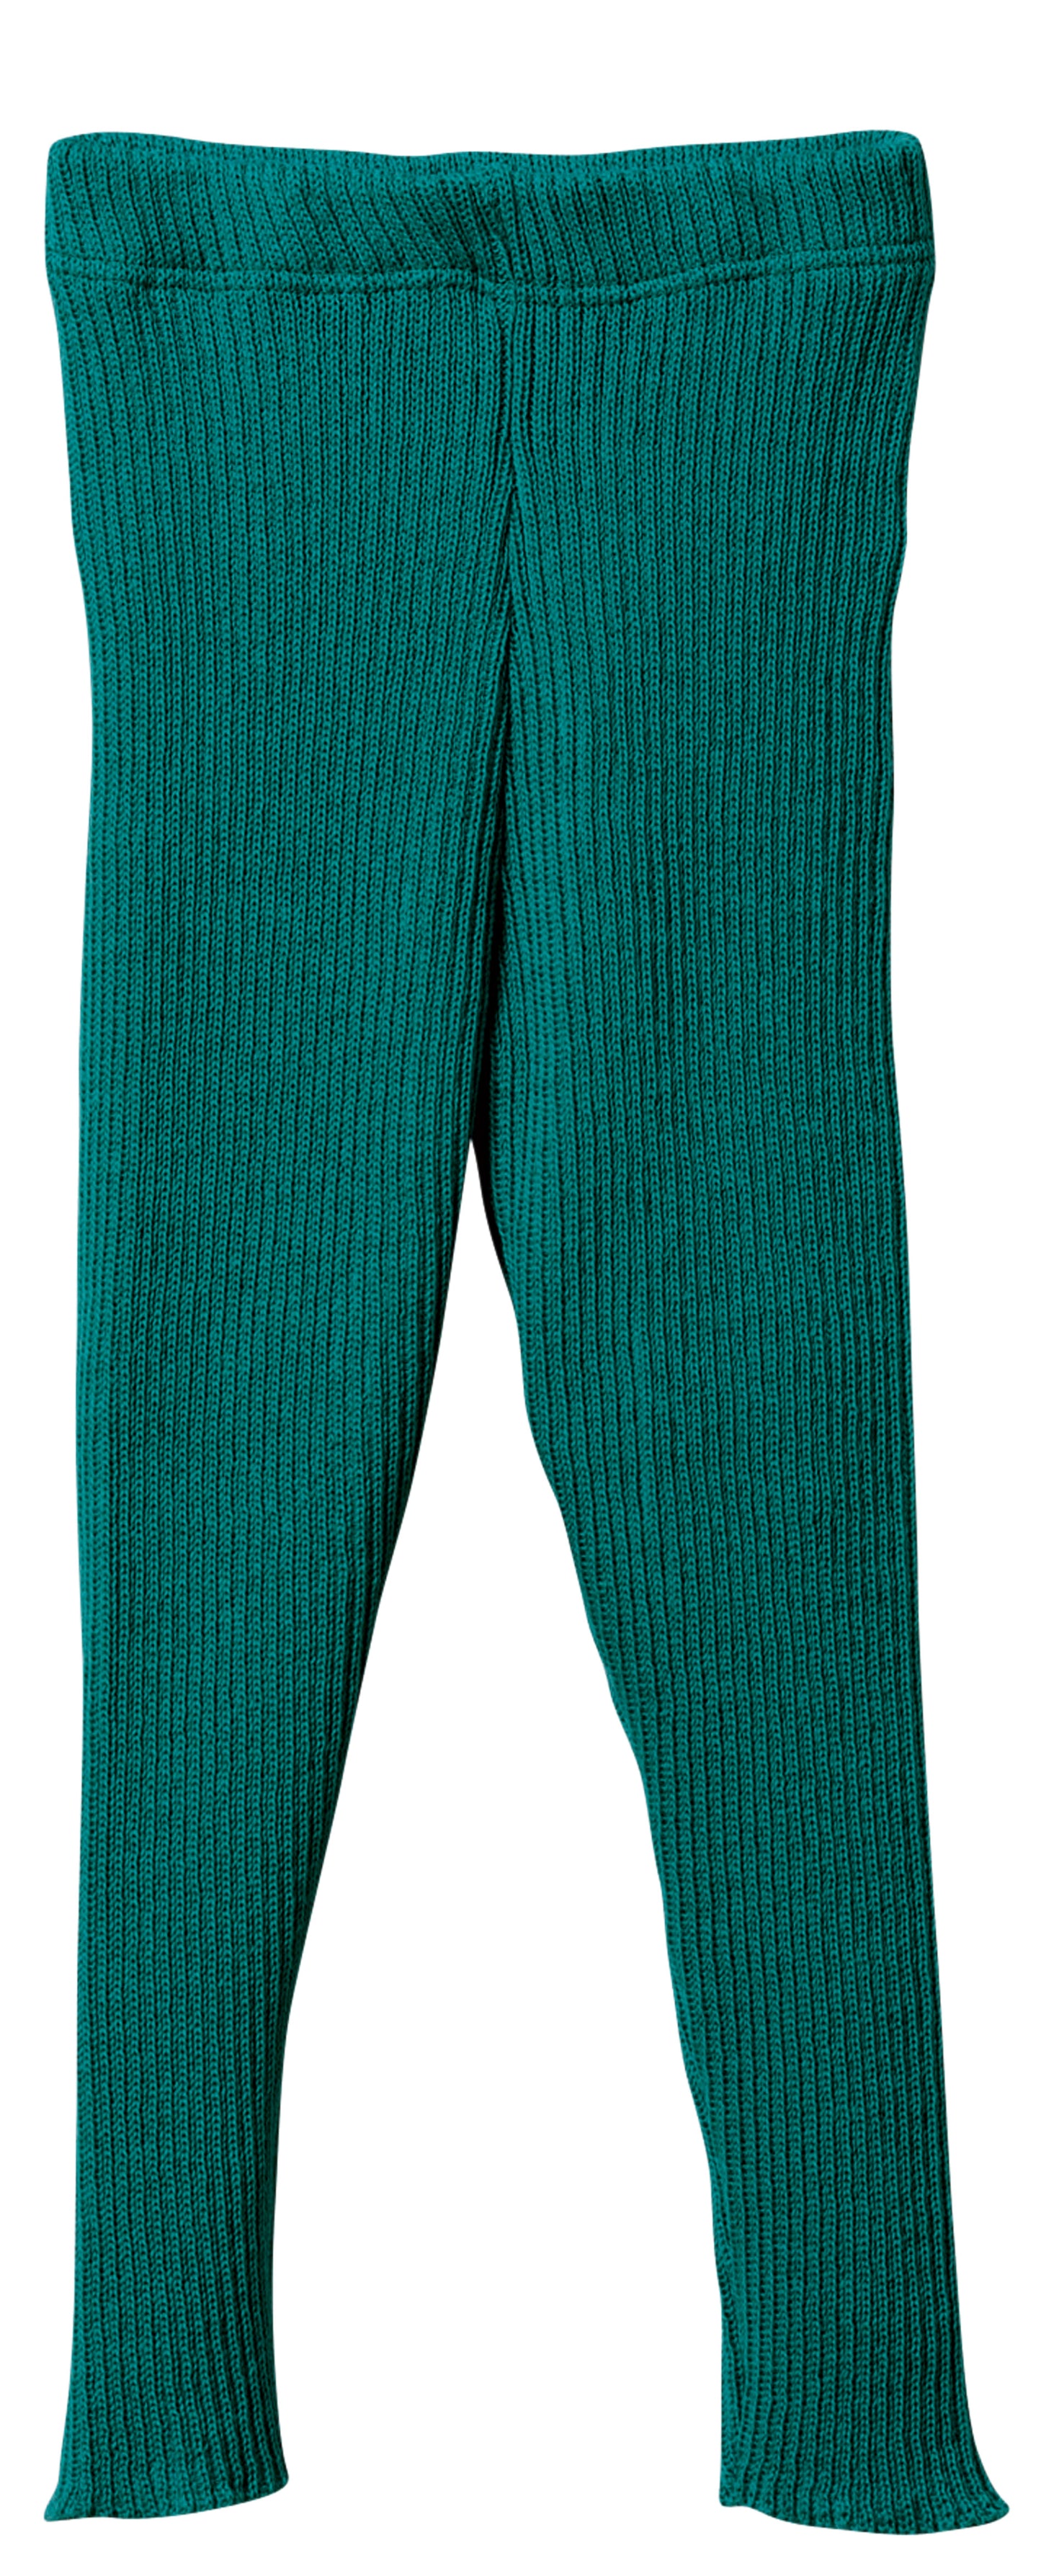 Women's ribbed knit leggings - green